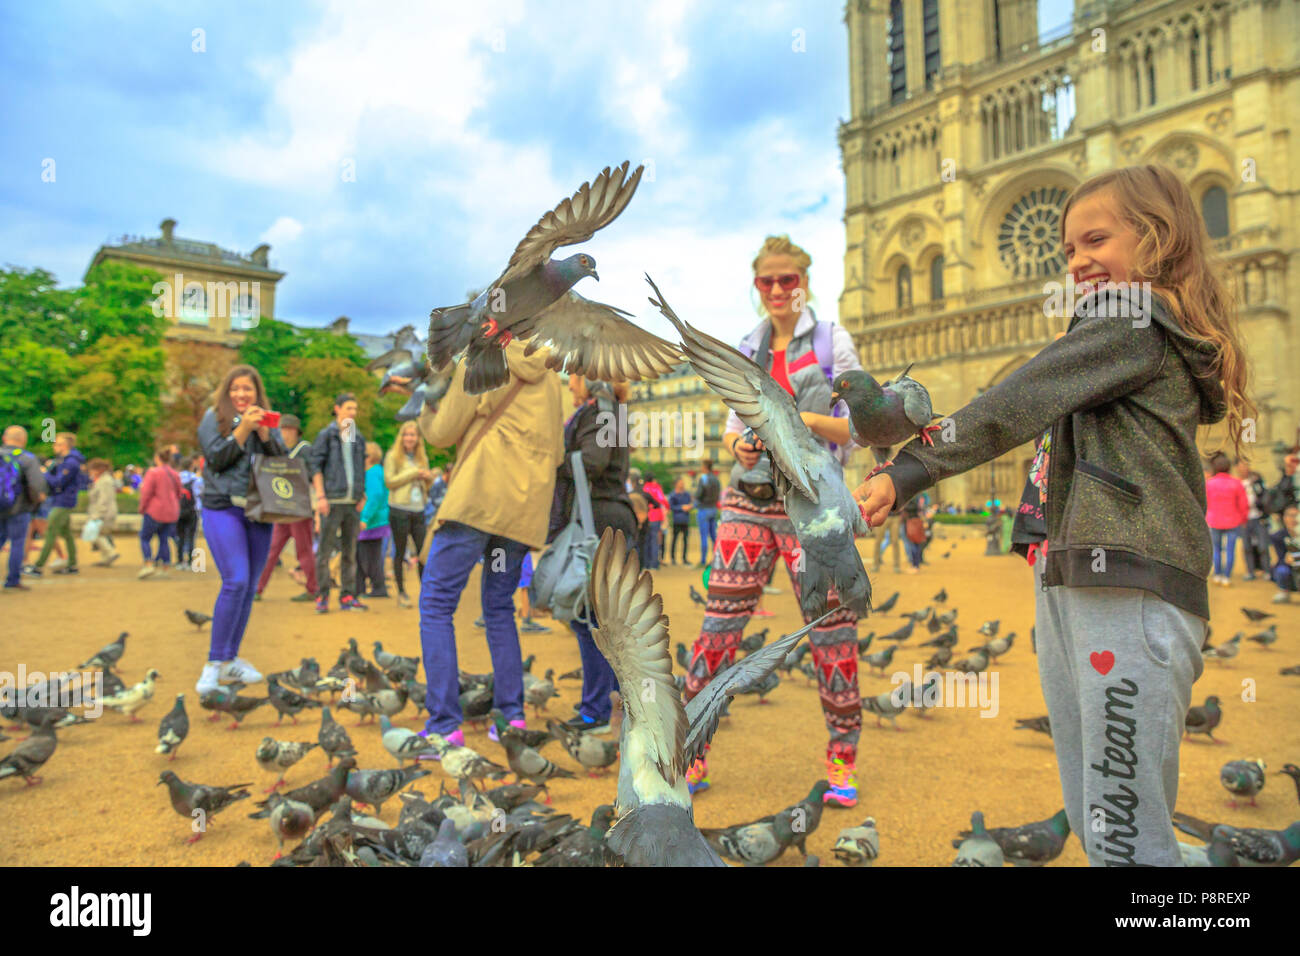 Parigi, Francia - luglio 1, 2017: Happy Child alimenta i piccioni a Notre Dame piazza piena di gente. Giovane turista gode di Parigi. Una popolare destinazione turistica nella capitale francese. La cattedrale in background. Foto Stock